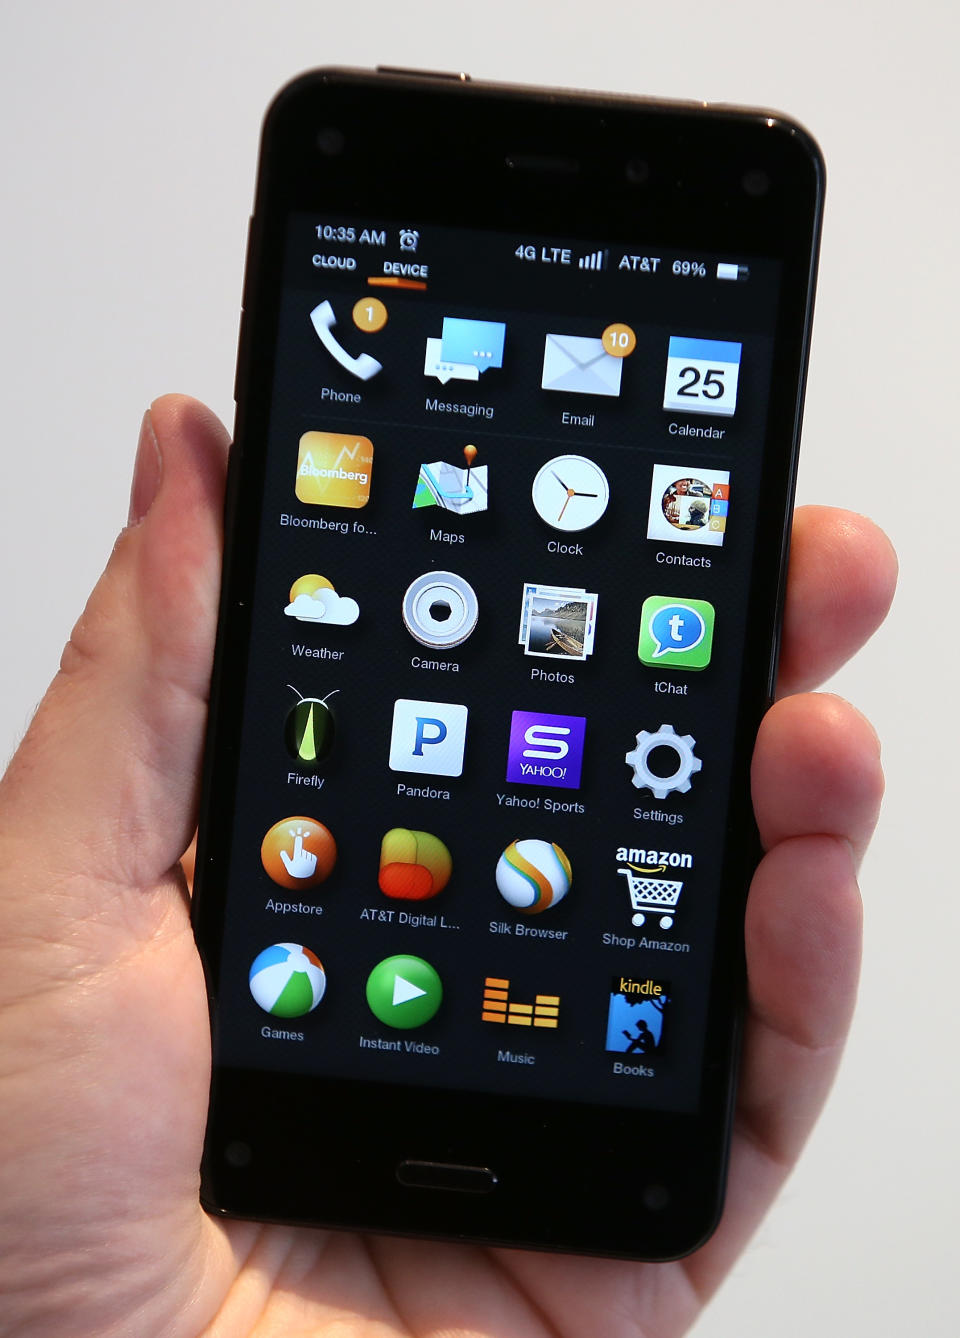 Das Amazon Fire Phone war 2014 das erste Smartphone des Onlineanbieters, konnte aber nicht überzeuge. Dabei sollten Features wie der 4,7 Zoll große Bildschirm oder die 13-Megapixel-Kamera zum Erfolg führen. Allerdings kritisierten die User die schlechte Sprachqualität, die Netzempfindlichkeit und die Kameraqualität. 2015 wurde schließlich der Verkauf eingestellt.